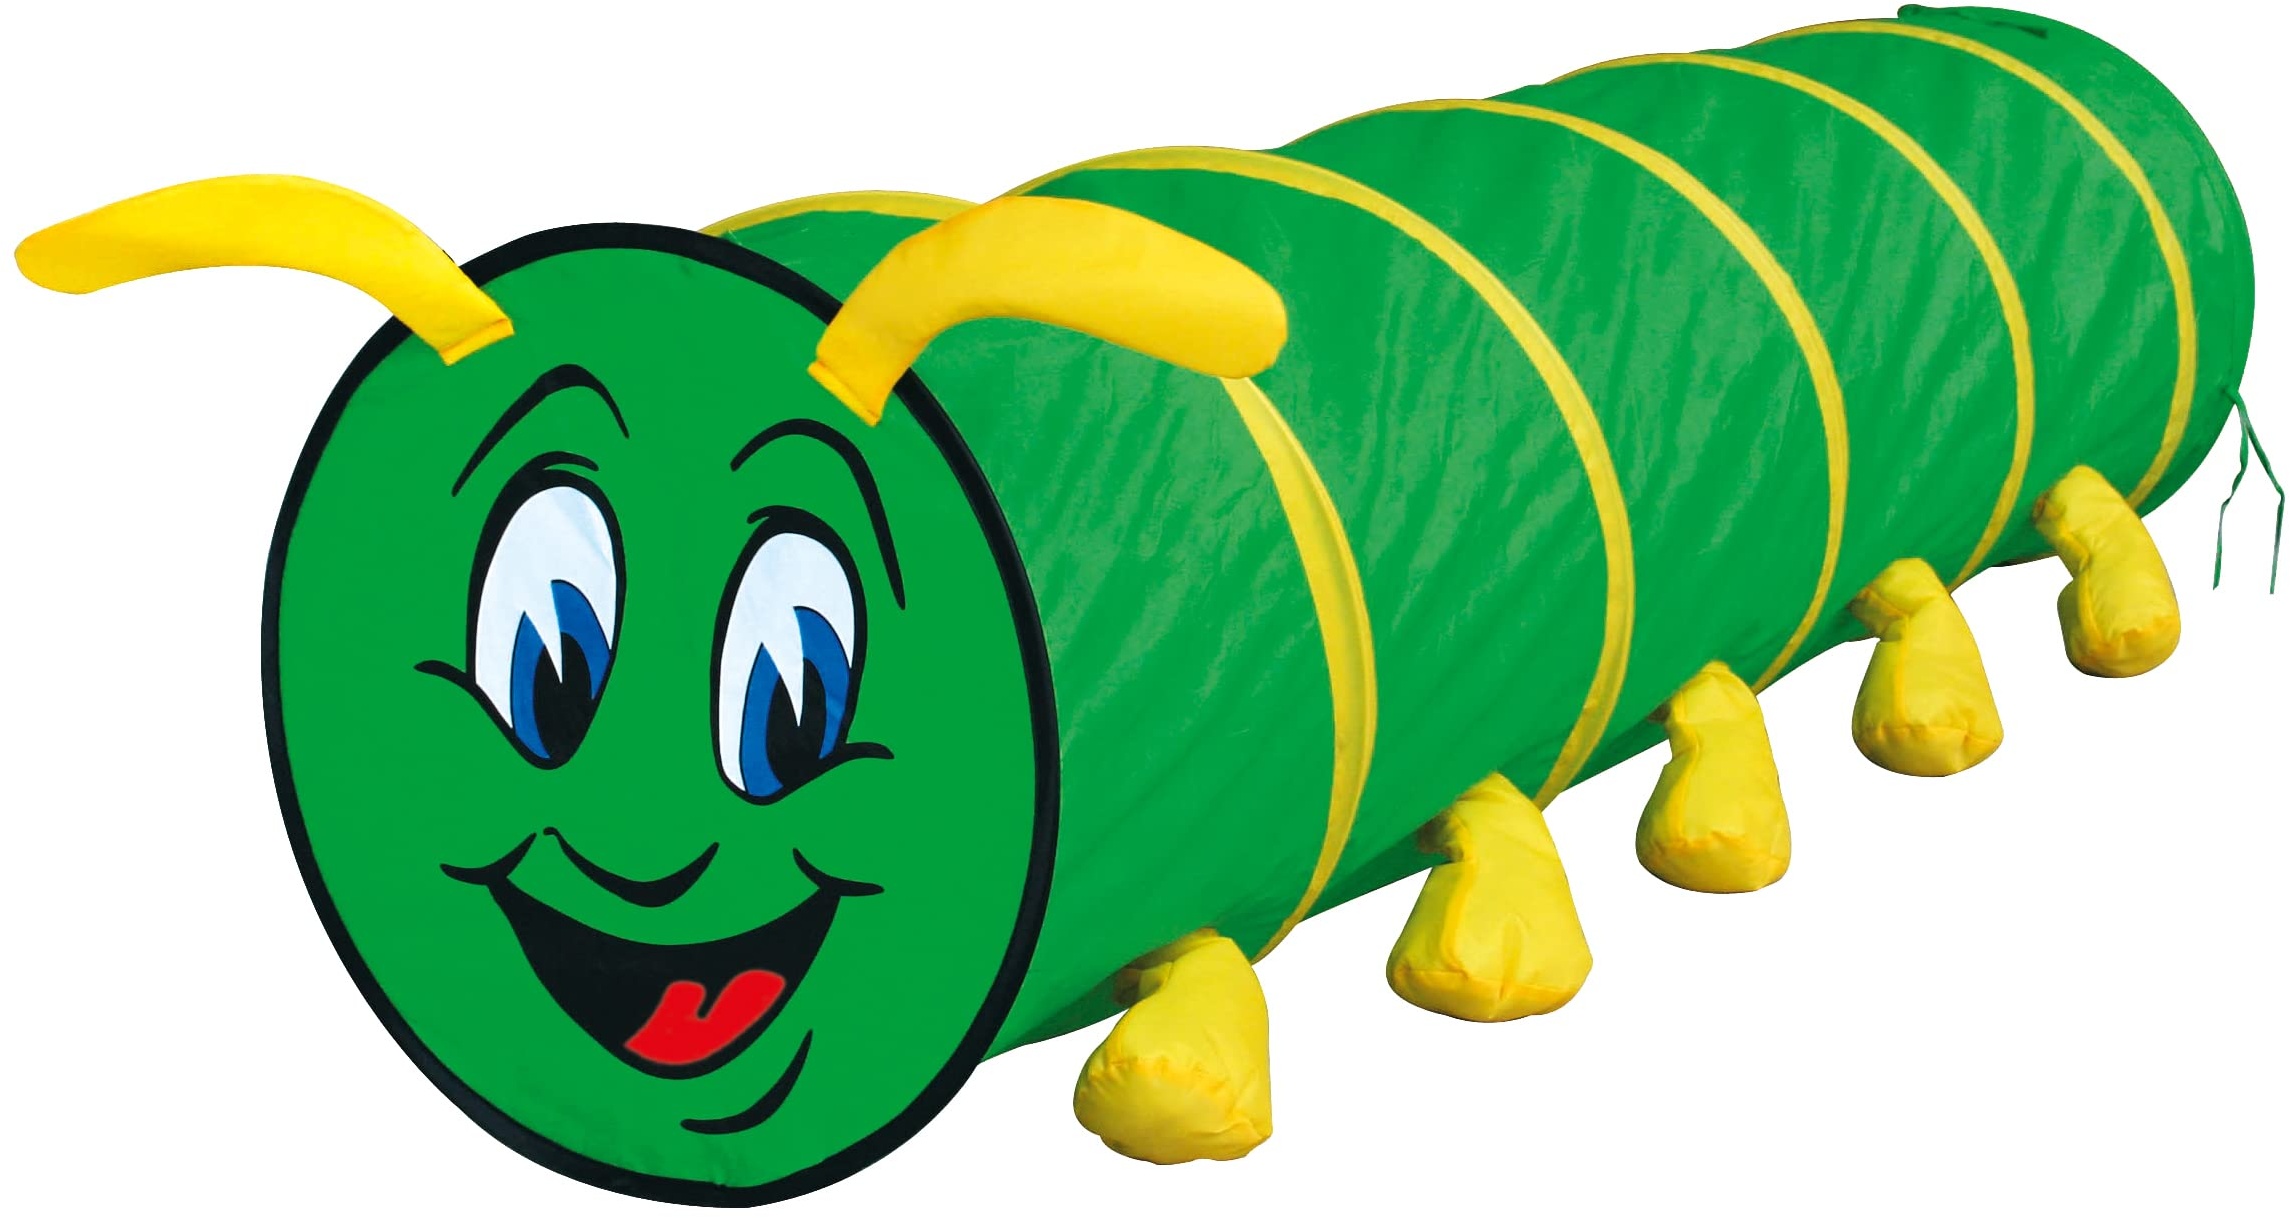 Bino & Mertens 82805 Tunnel Tausendfüssler Kinder Spielzeug ab 3 Jahre, Kinderspielzeug (Spieltunnel für drinnen und draußen, leichter Aufbau dank Pop-Up-Design, kleinfaltbar & platzsparend, schönes Design), Grün